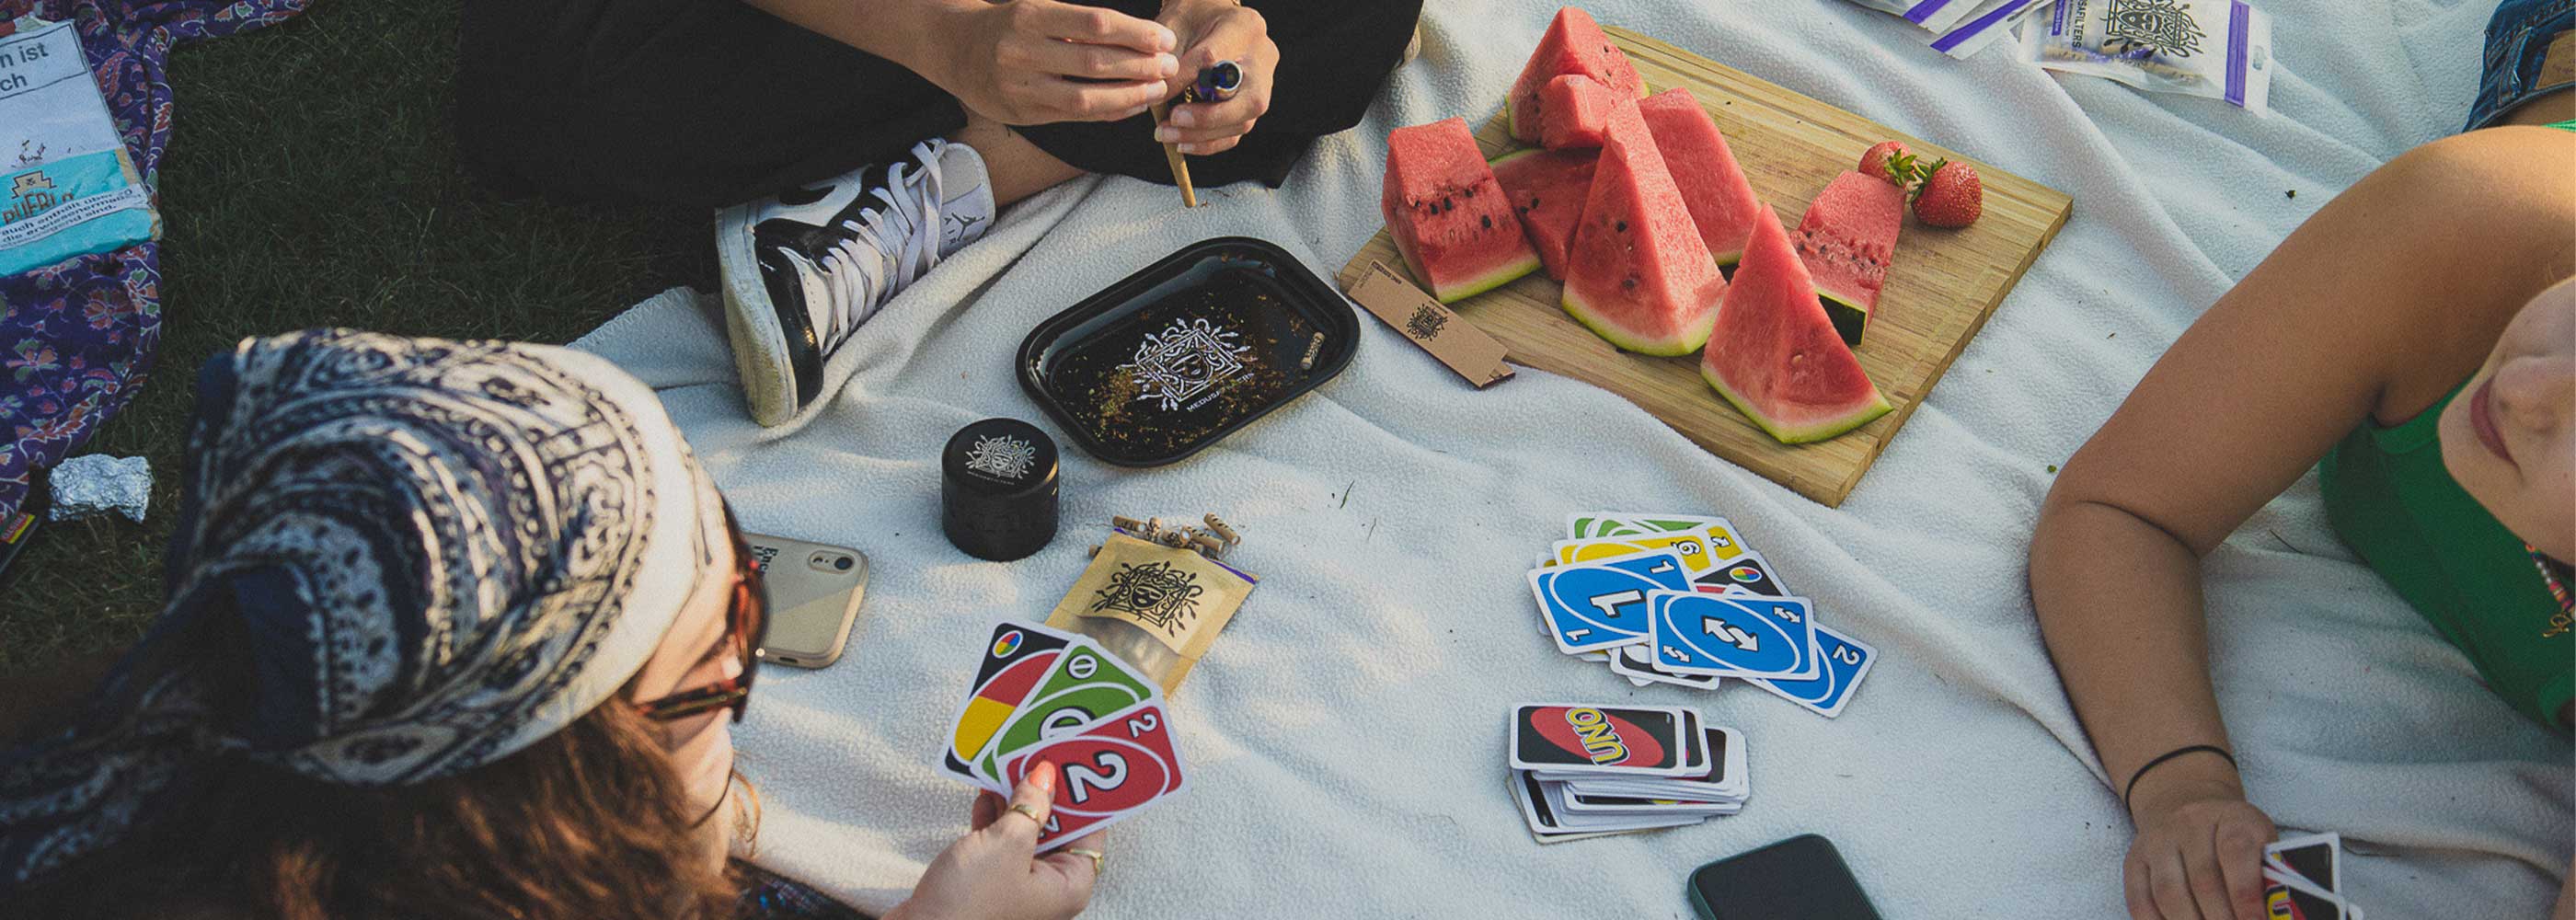 Picknick Uno spielen Wassermelone Medusafilters Rolling Tray Joint Aktivkohlefilter 